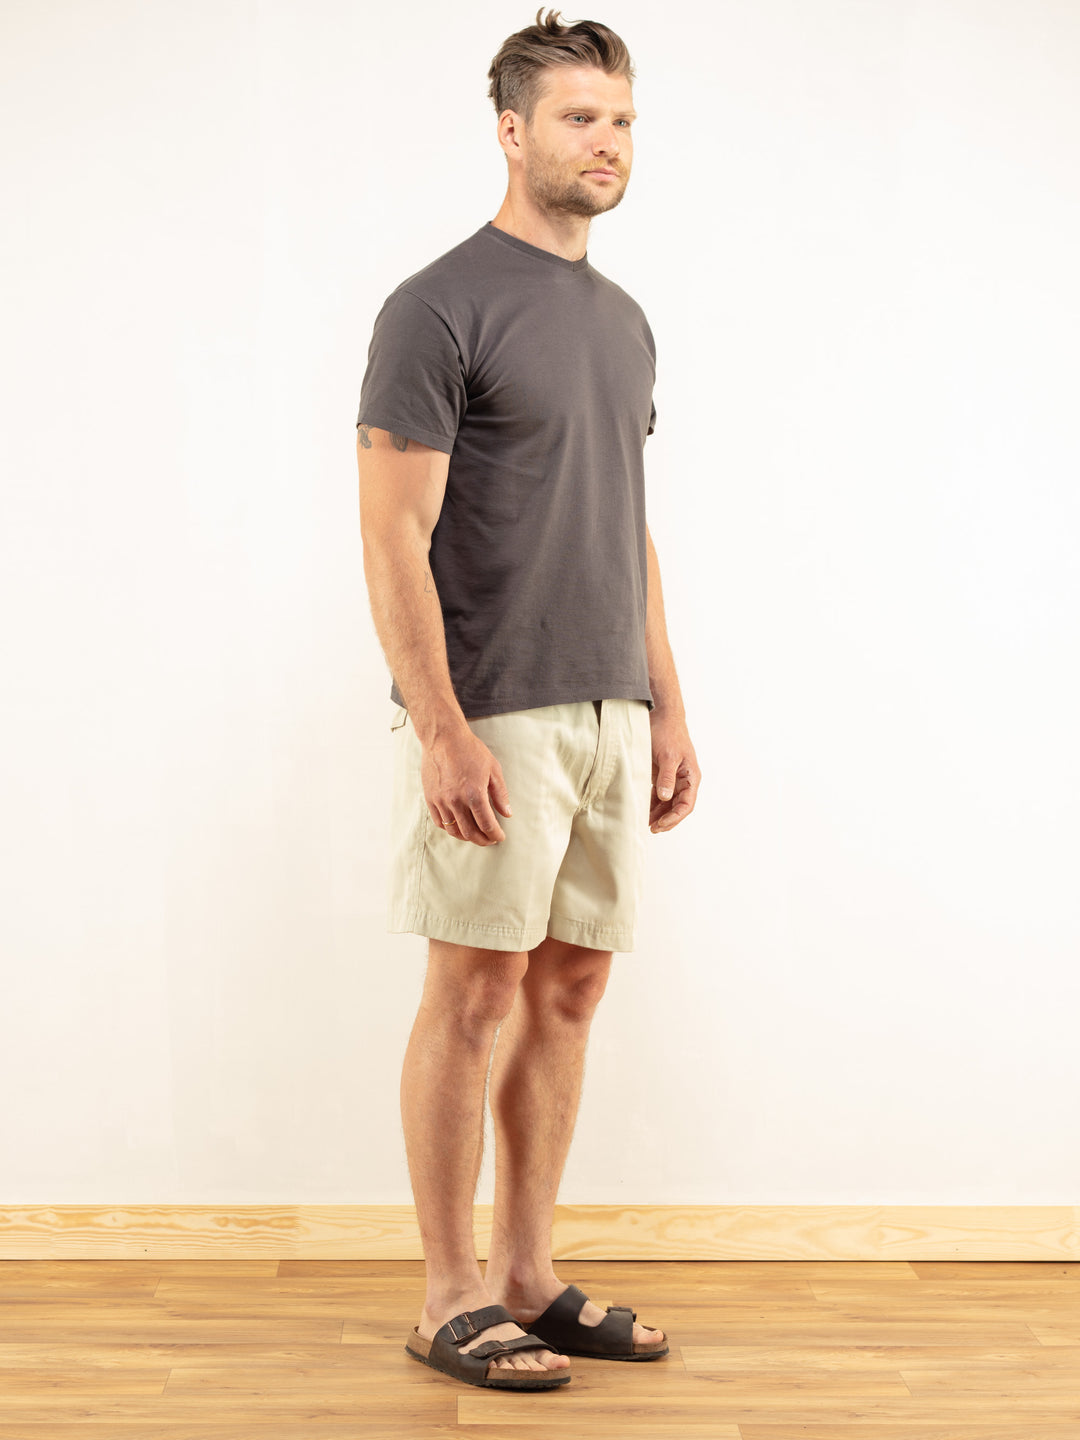 Beige Chino Shorts 90s vintage safari everyday short pants safari shorts summer shorts men clothing gift idea size extra large xl